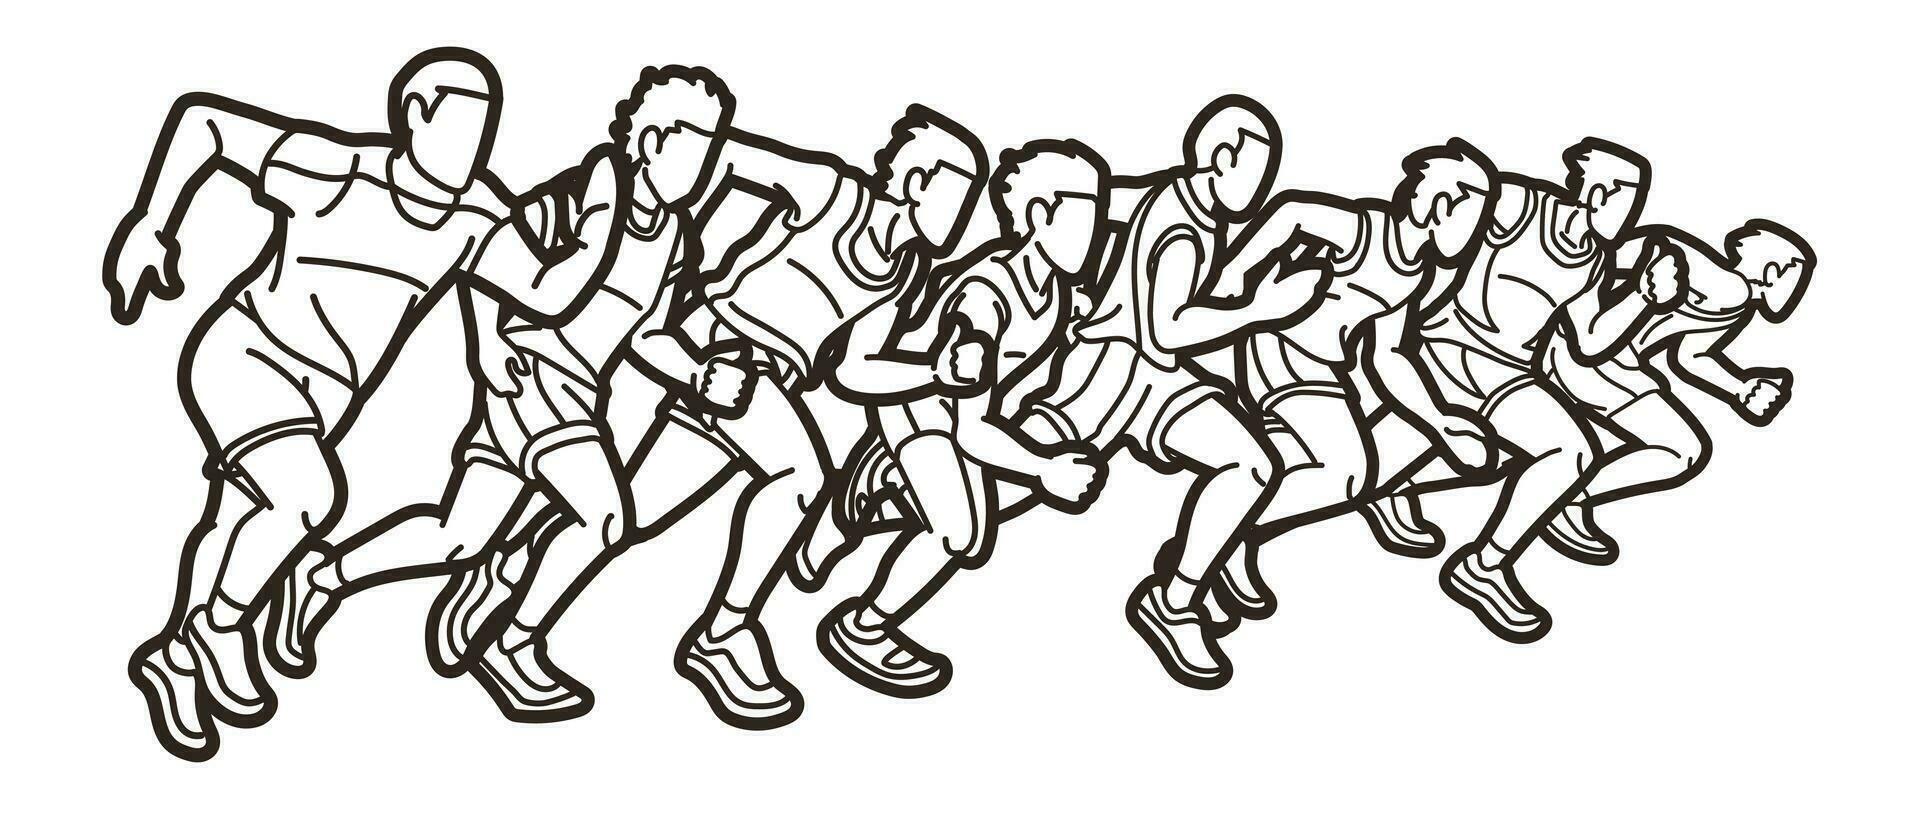 översikt grupp av löpare verkan Start löpning vektor